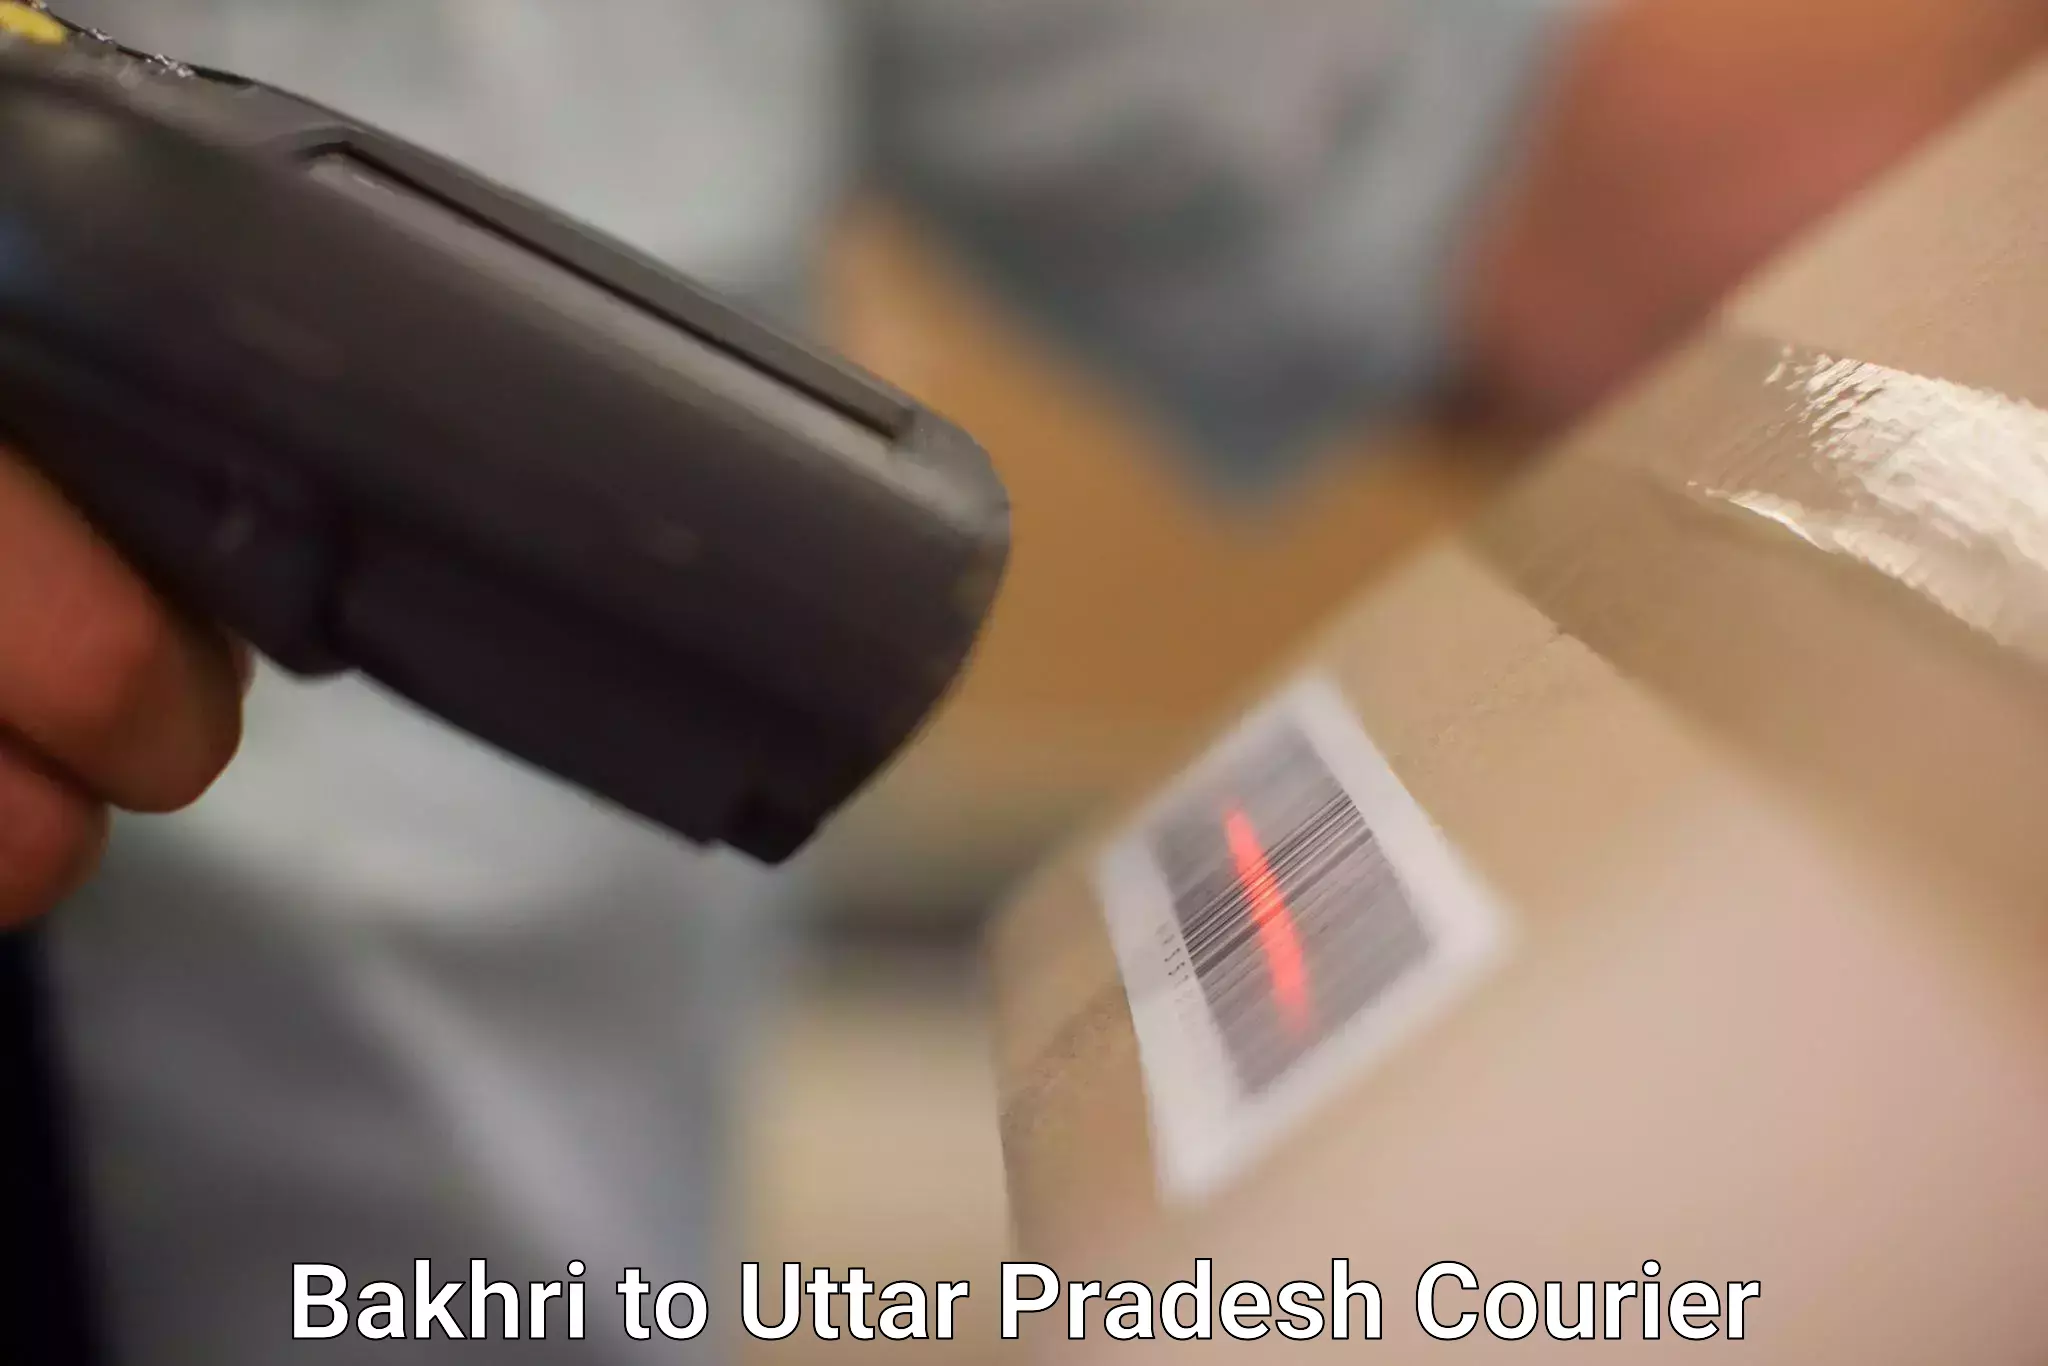 Flexible parcel services Bakhri to Meerut